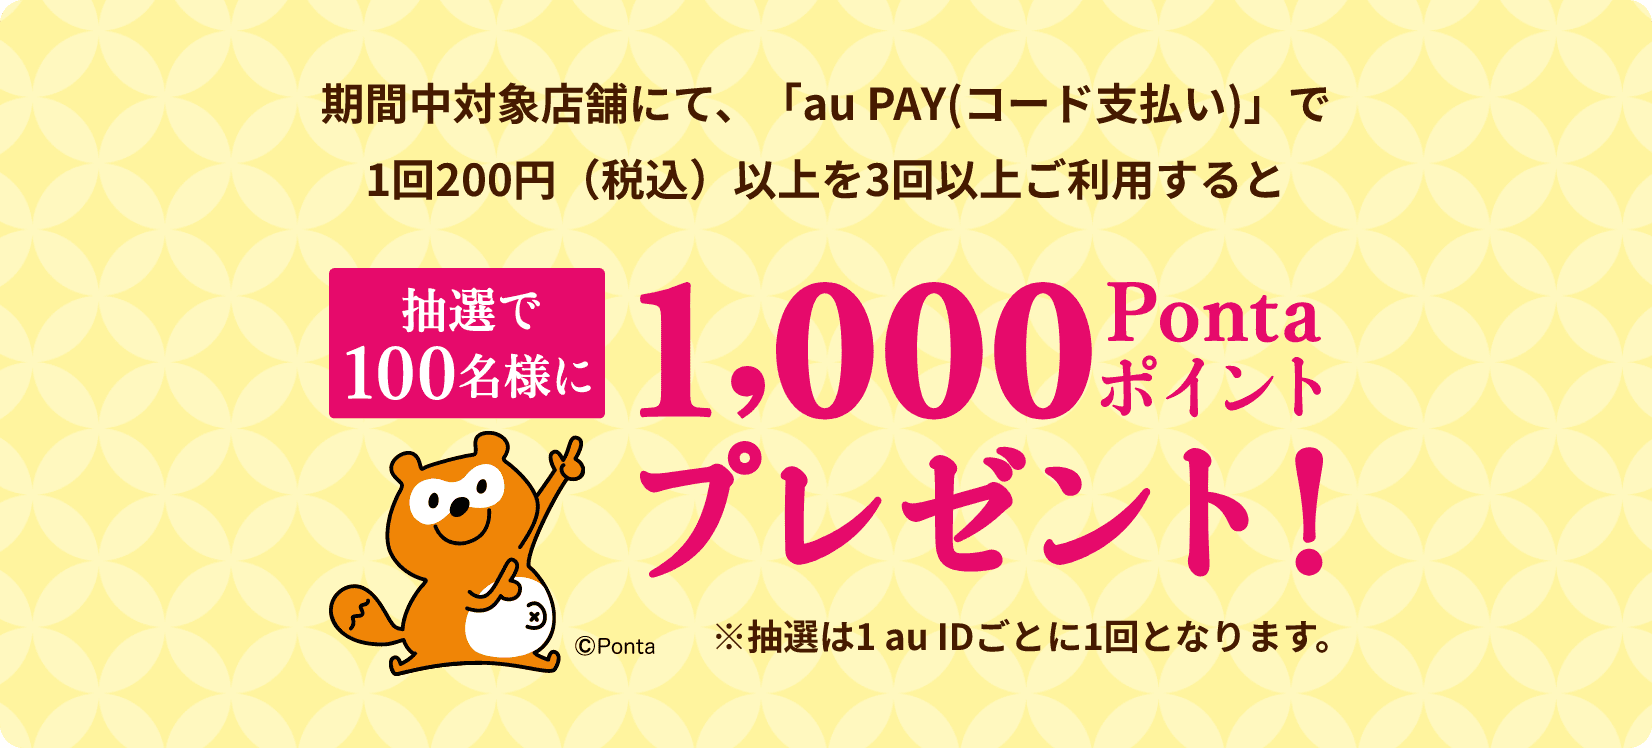 キャンペーン期間中「au PAY（コード支払い）」で200円（税込）以上のお買い物を3回以上いただくと抽選で100名様に1,000Pontaポイントプレゼント！※抽選は1 au IDごとに1回となります。